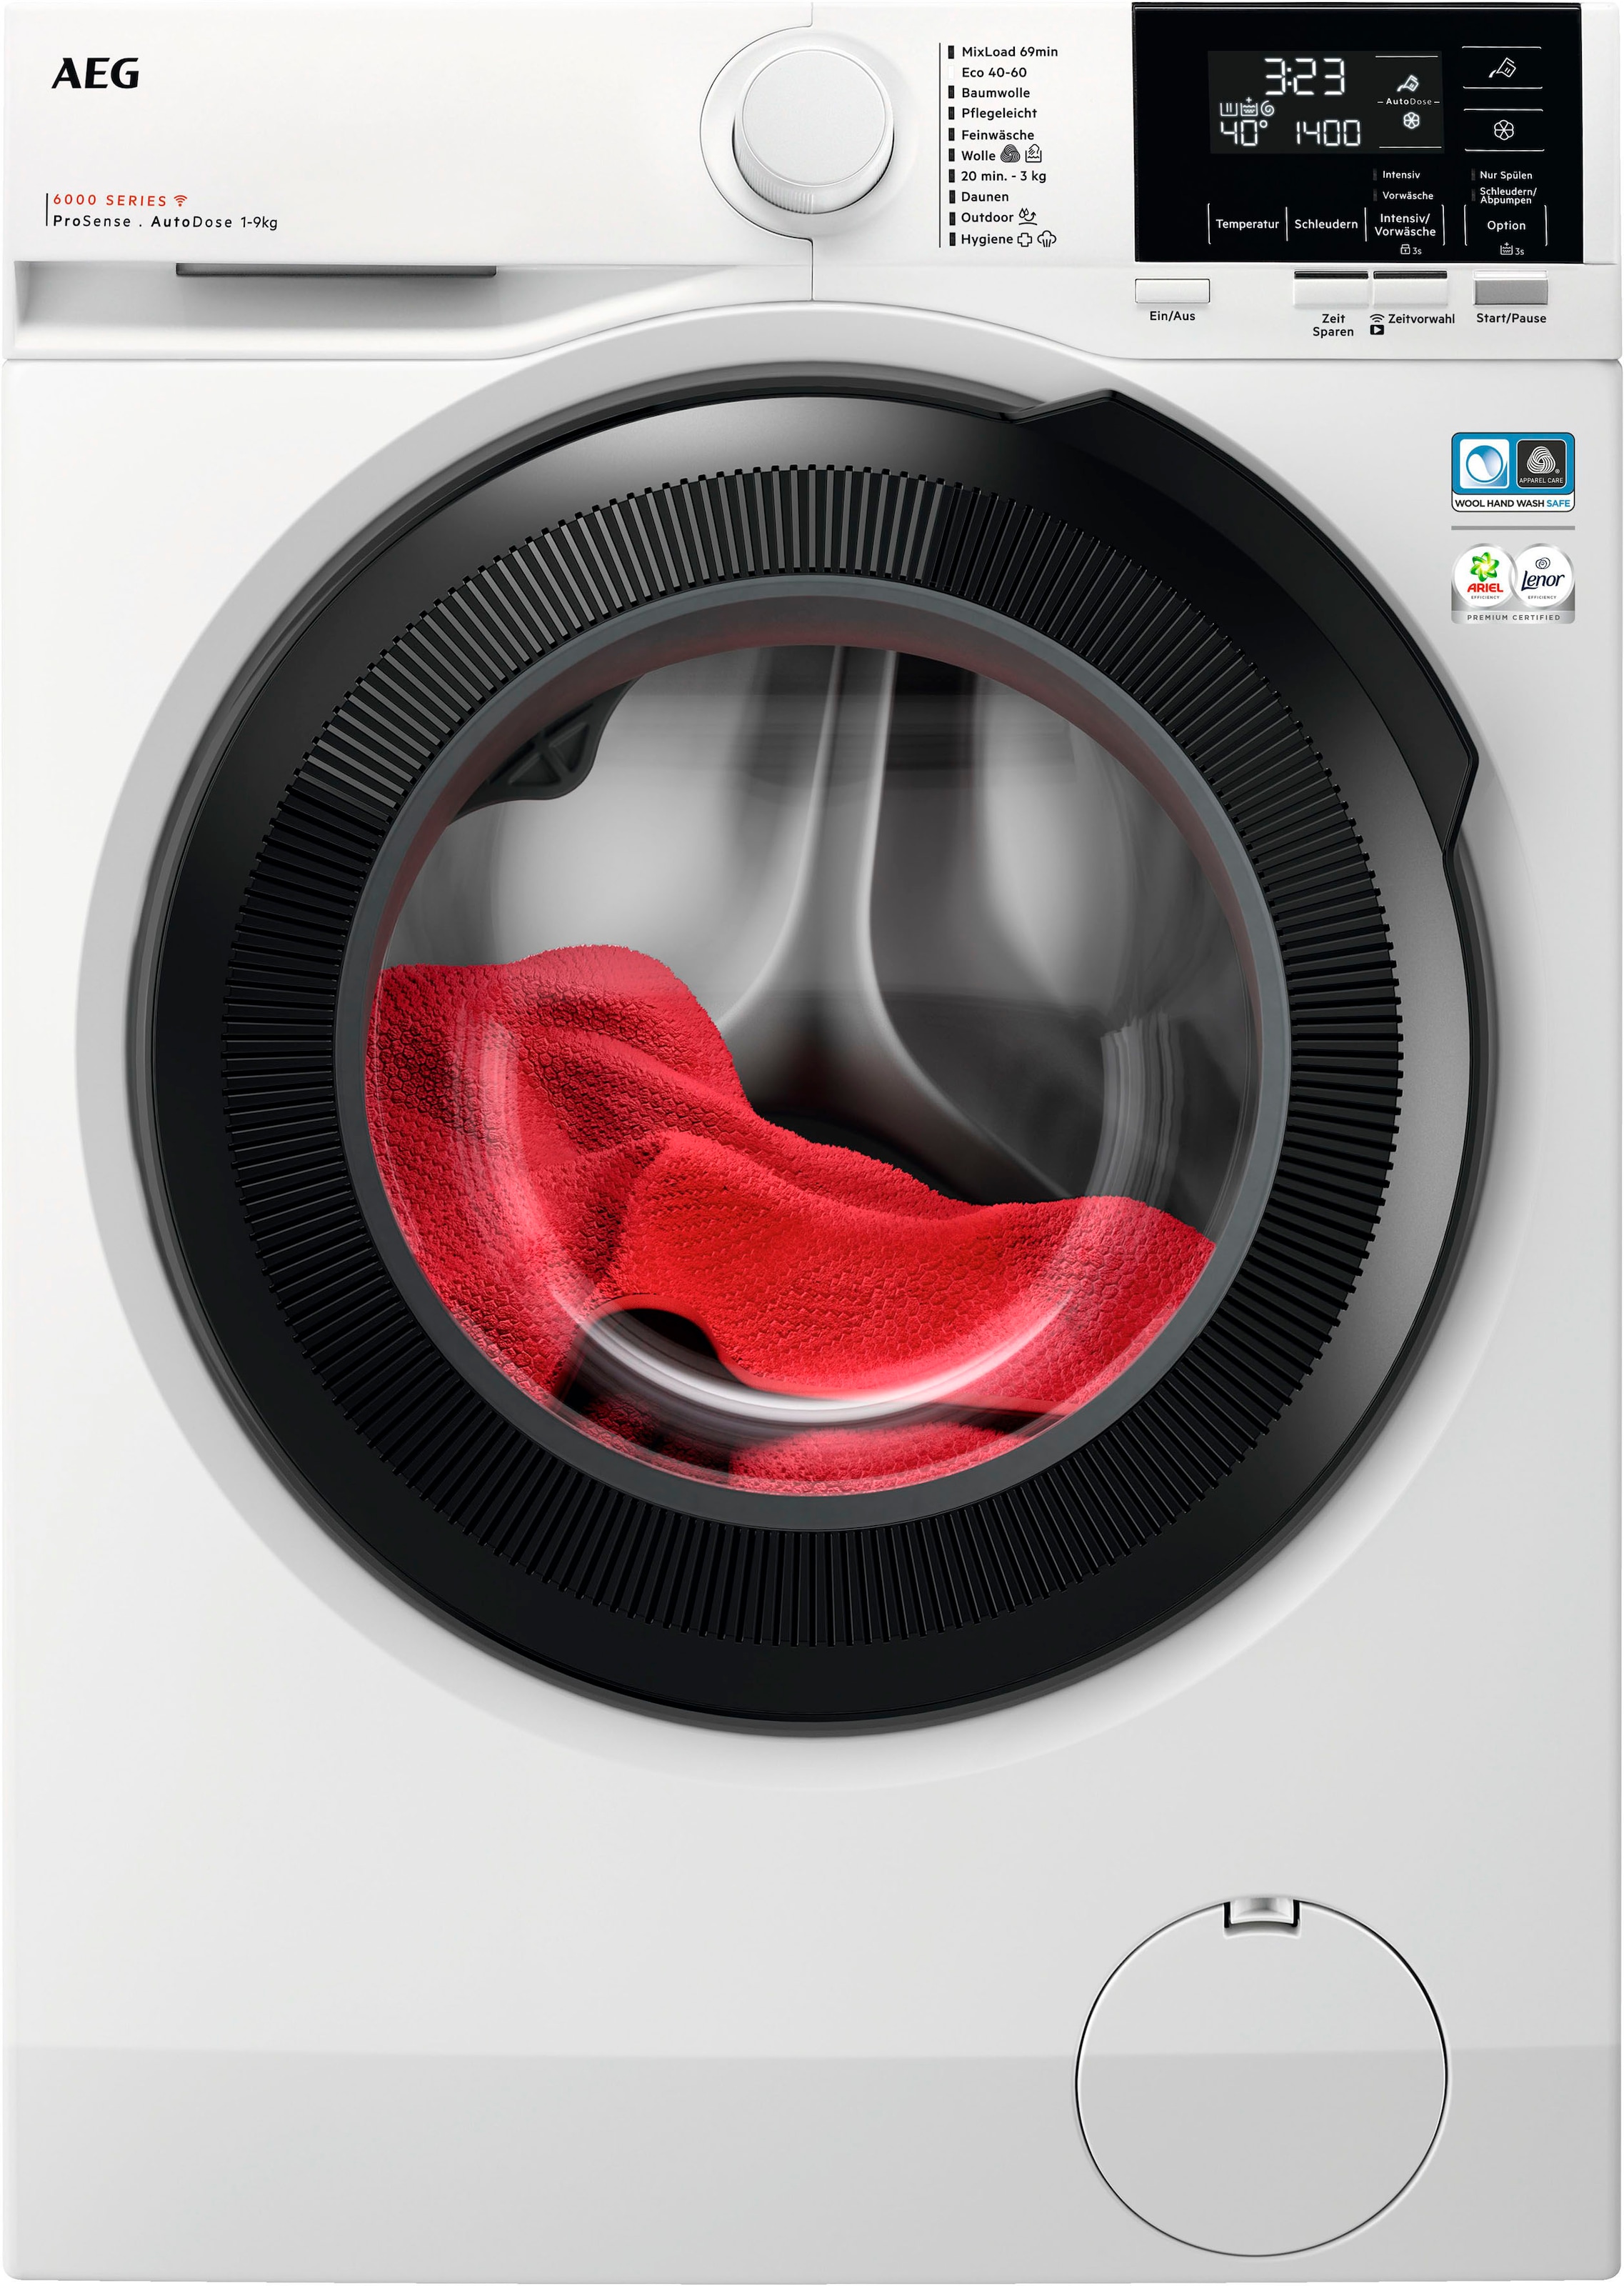 AEG Waschmaschine, LR6D60490 914915144, 9 kg, 1400 U/min, ProSense® Mengenautomatik​ - spart bis 40% Zeit, Wasser und Energie